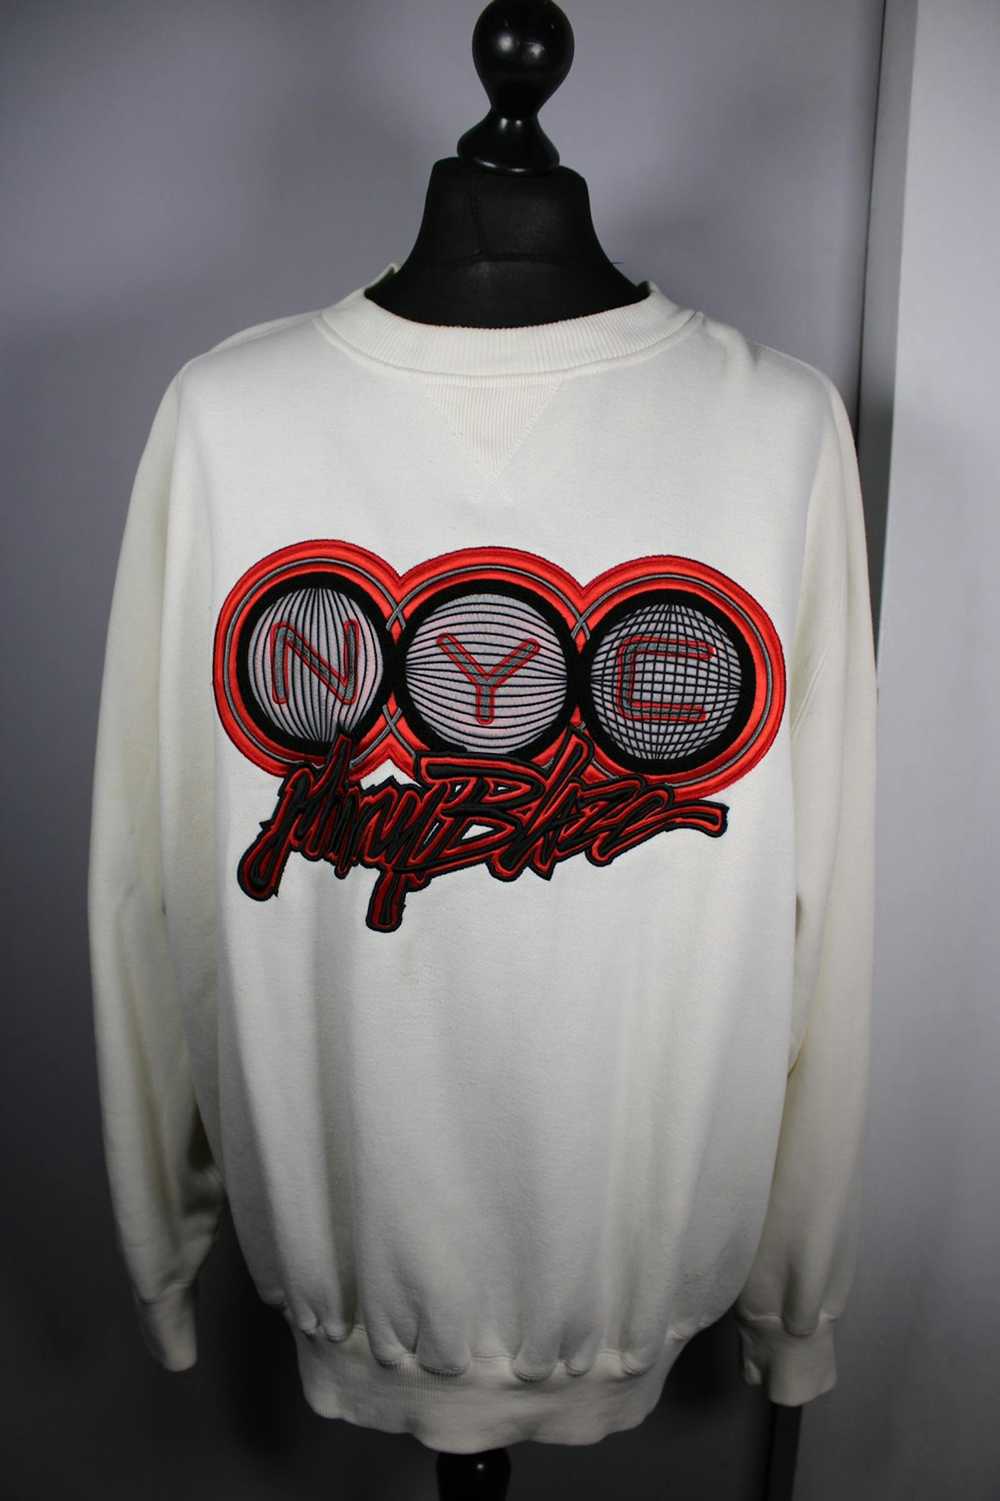 Method Method Man “Johnny Blaze” NYC sweatshirt - image 1